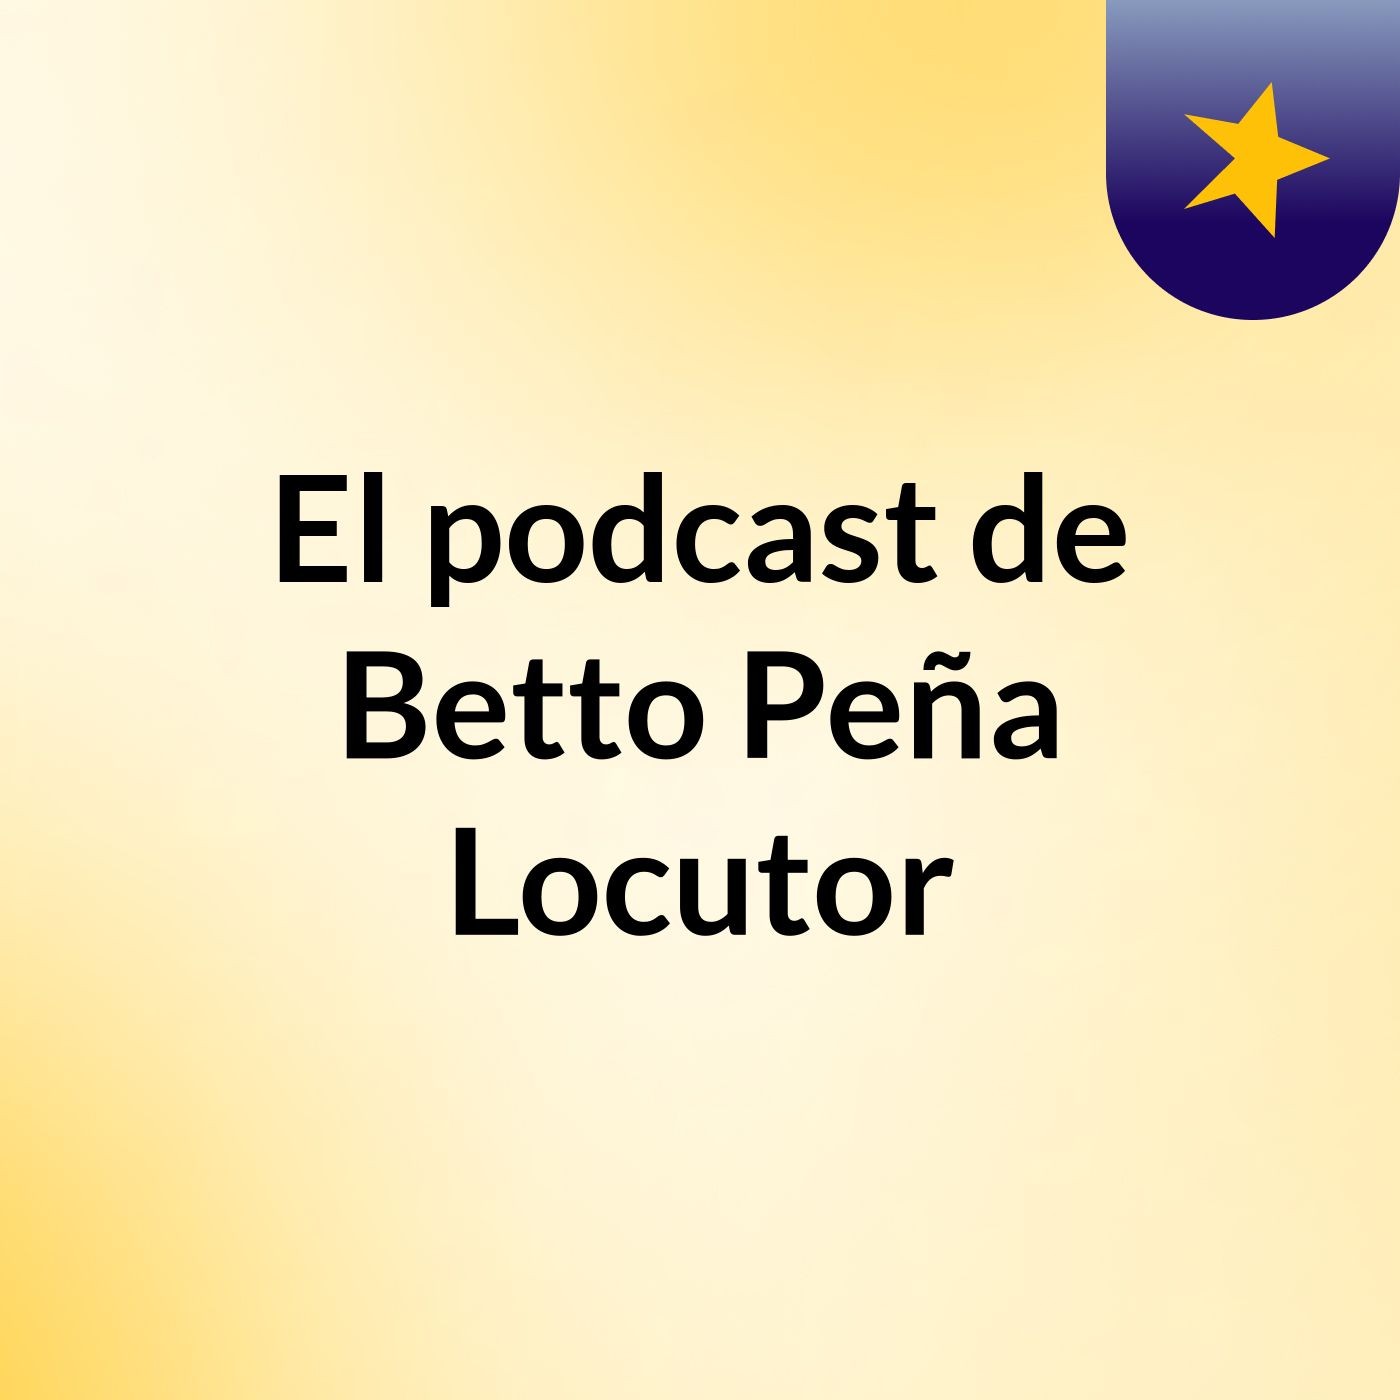 El podcast de Betto Peña Locutor